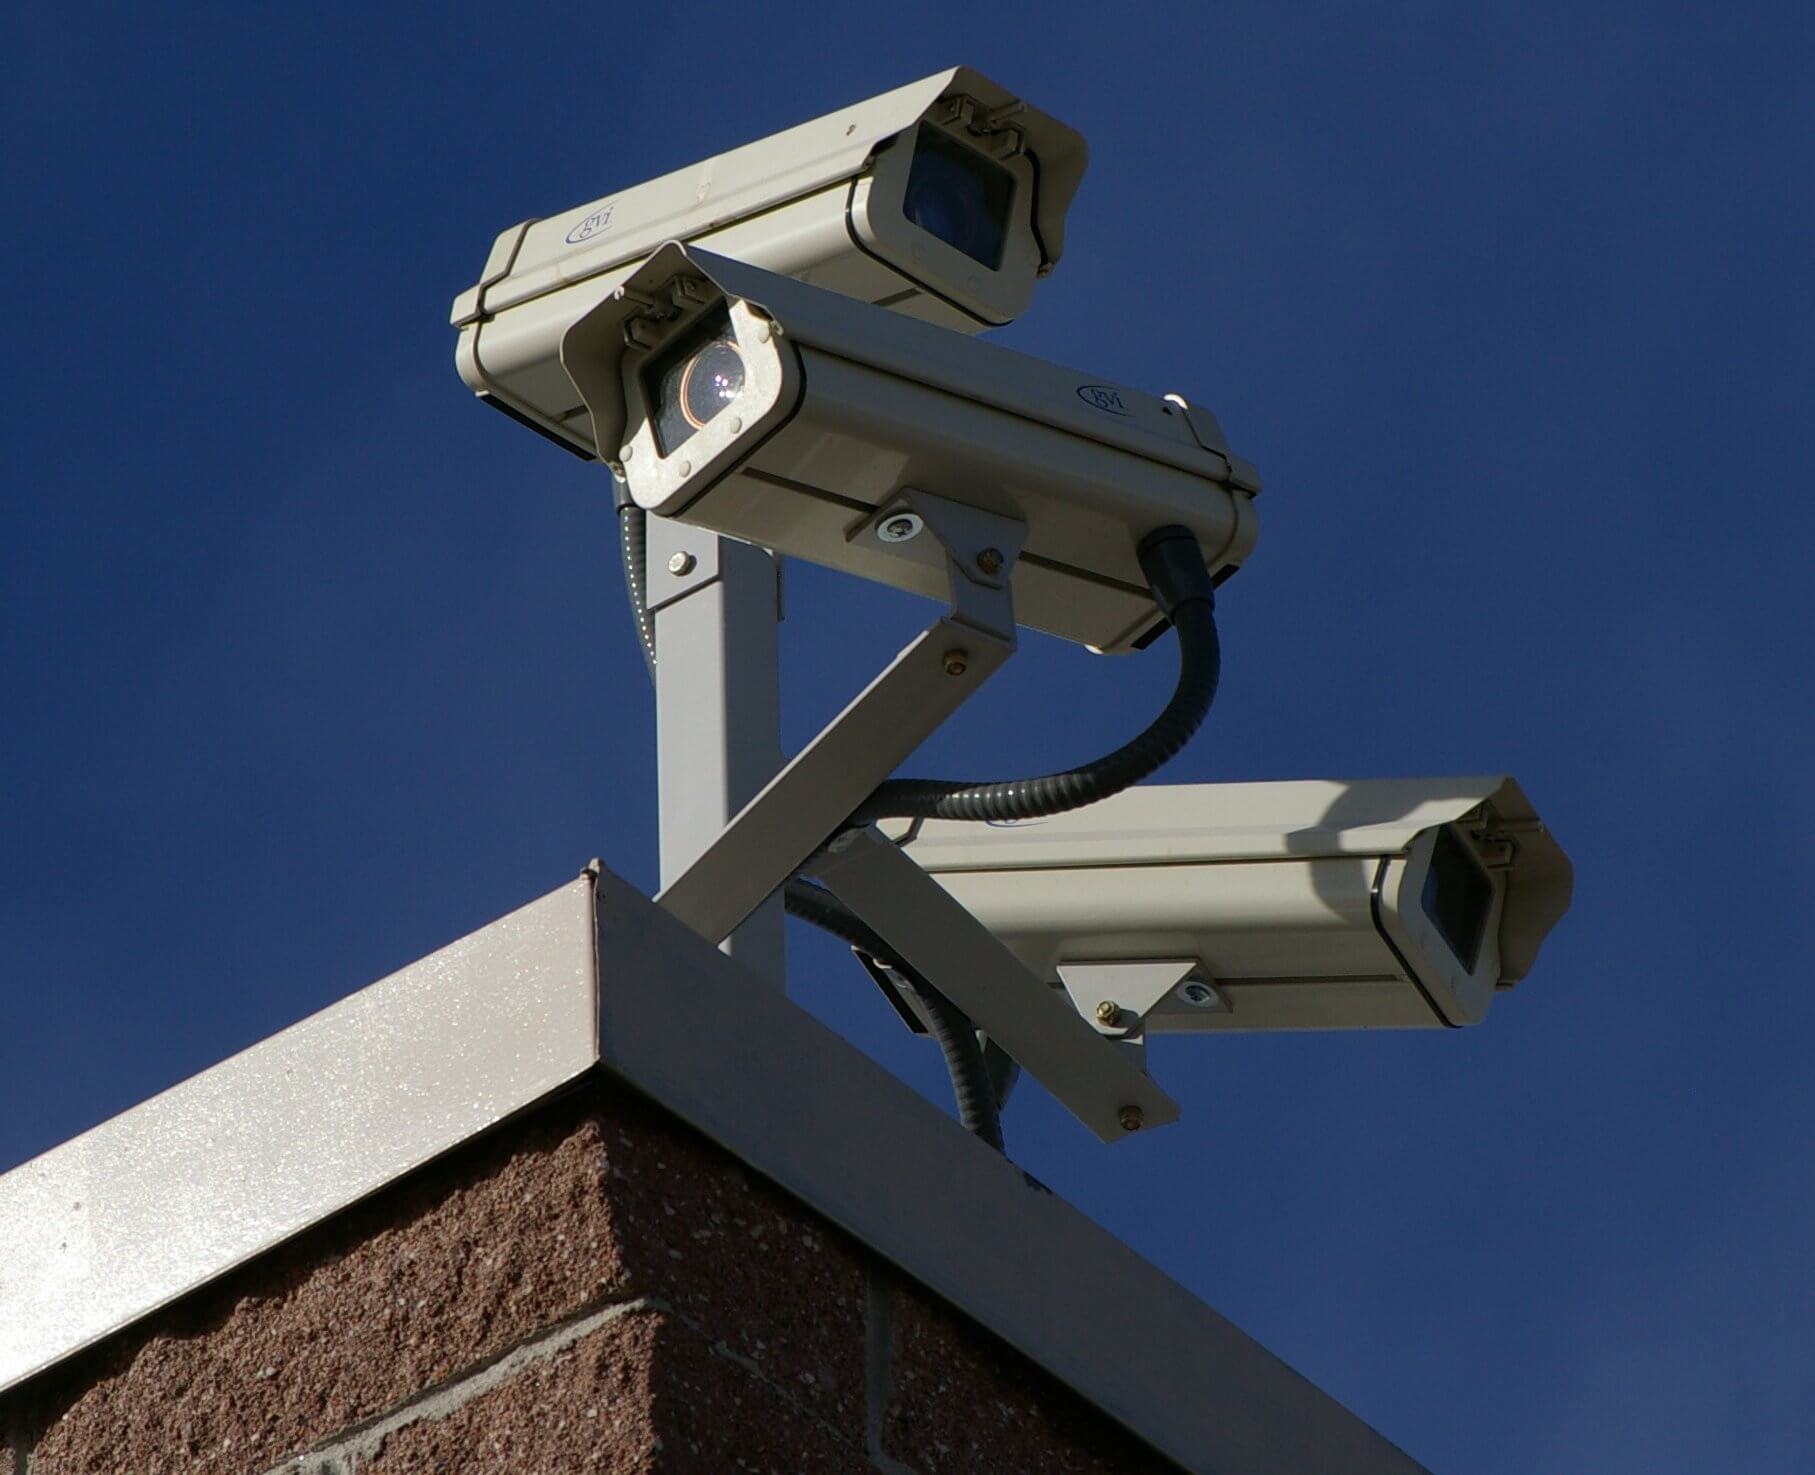 Zapytanie ofertowe – dostawa i montaż systemu monitoringu wizyjnego CCTV oraz dostawa i montaż elektronicznego systemu dozoru wraz z instalacją i uruchomieniem